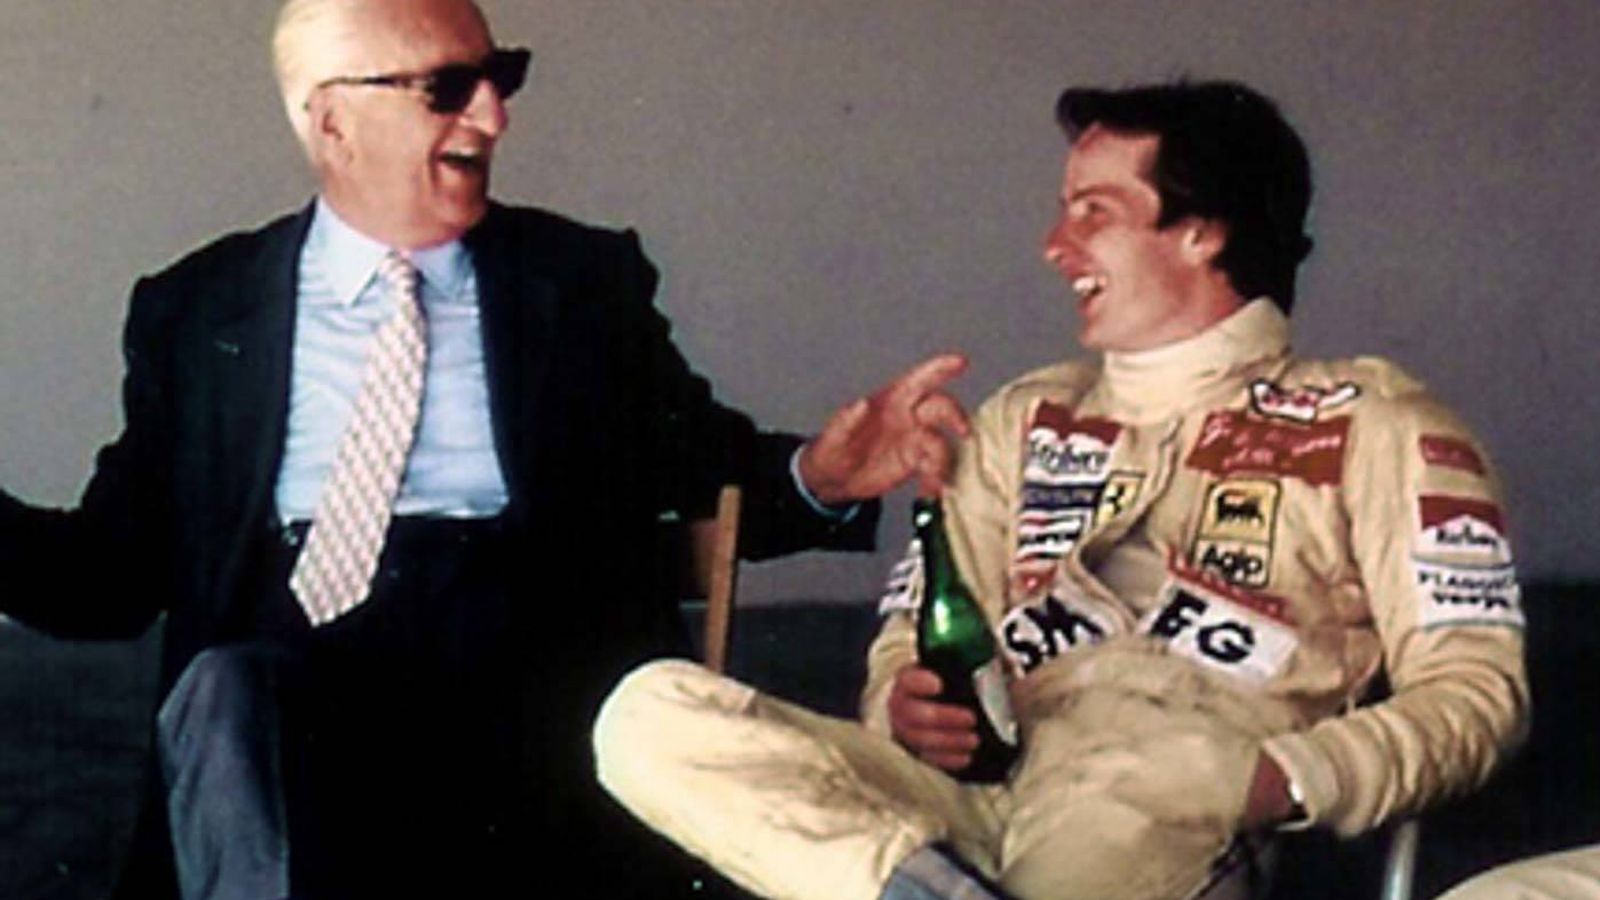 Foto: Enzo Ferrari charlando con Gilles Villeneuve, su piloto favorito.